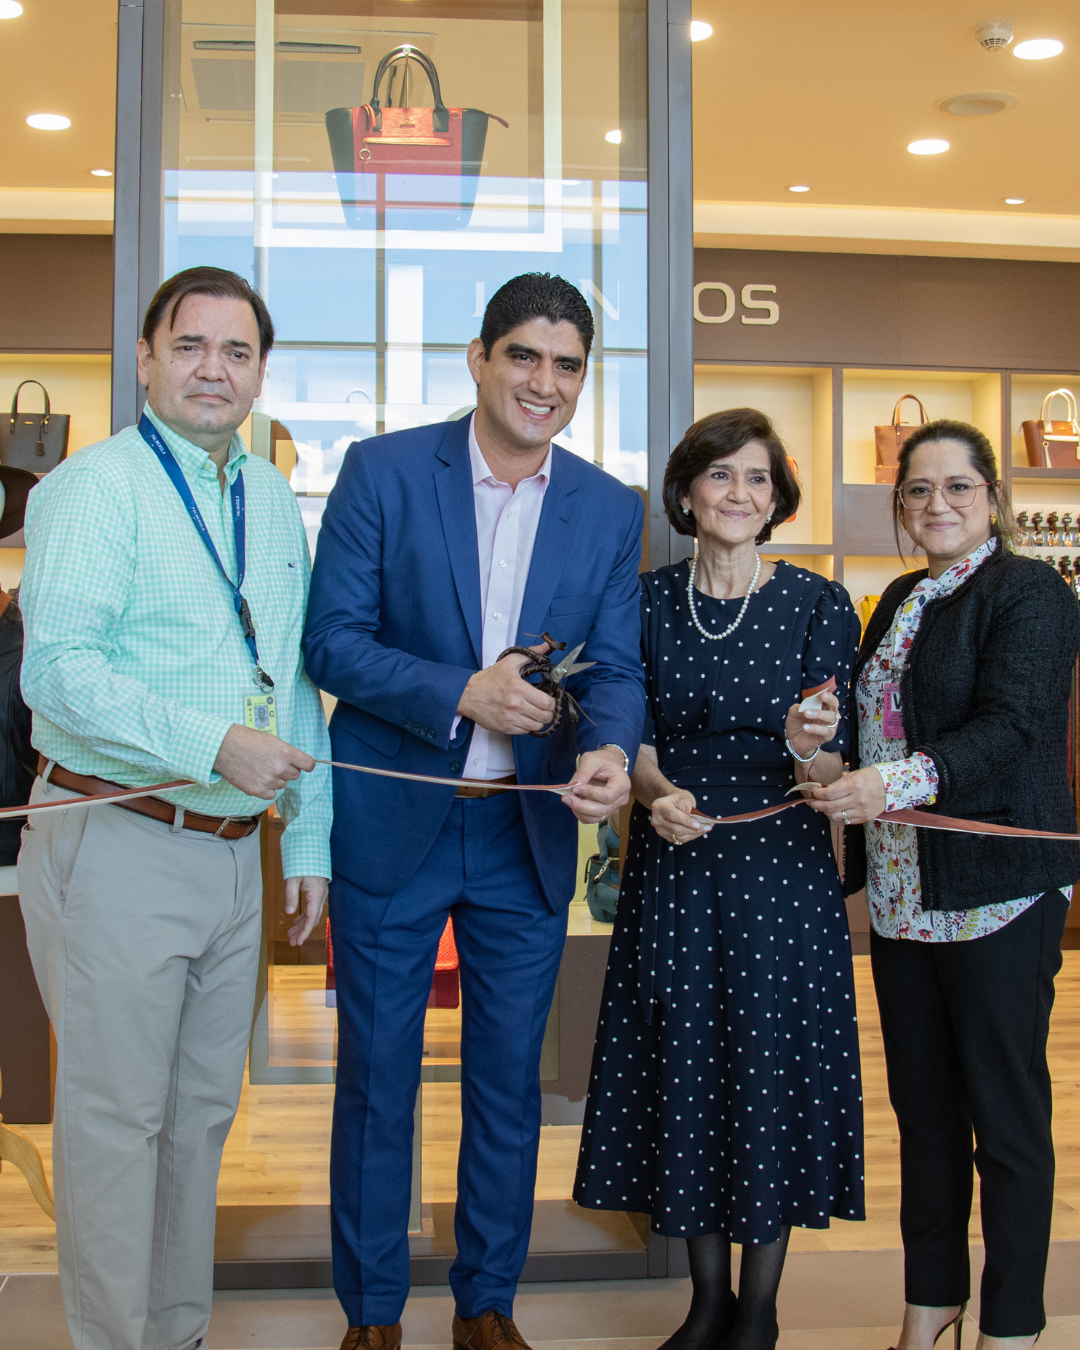 Danilos inaugura nueva tienda en Aeropuerto Internacional de Palmerola